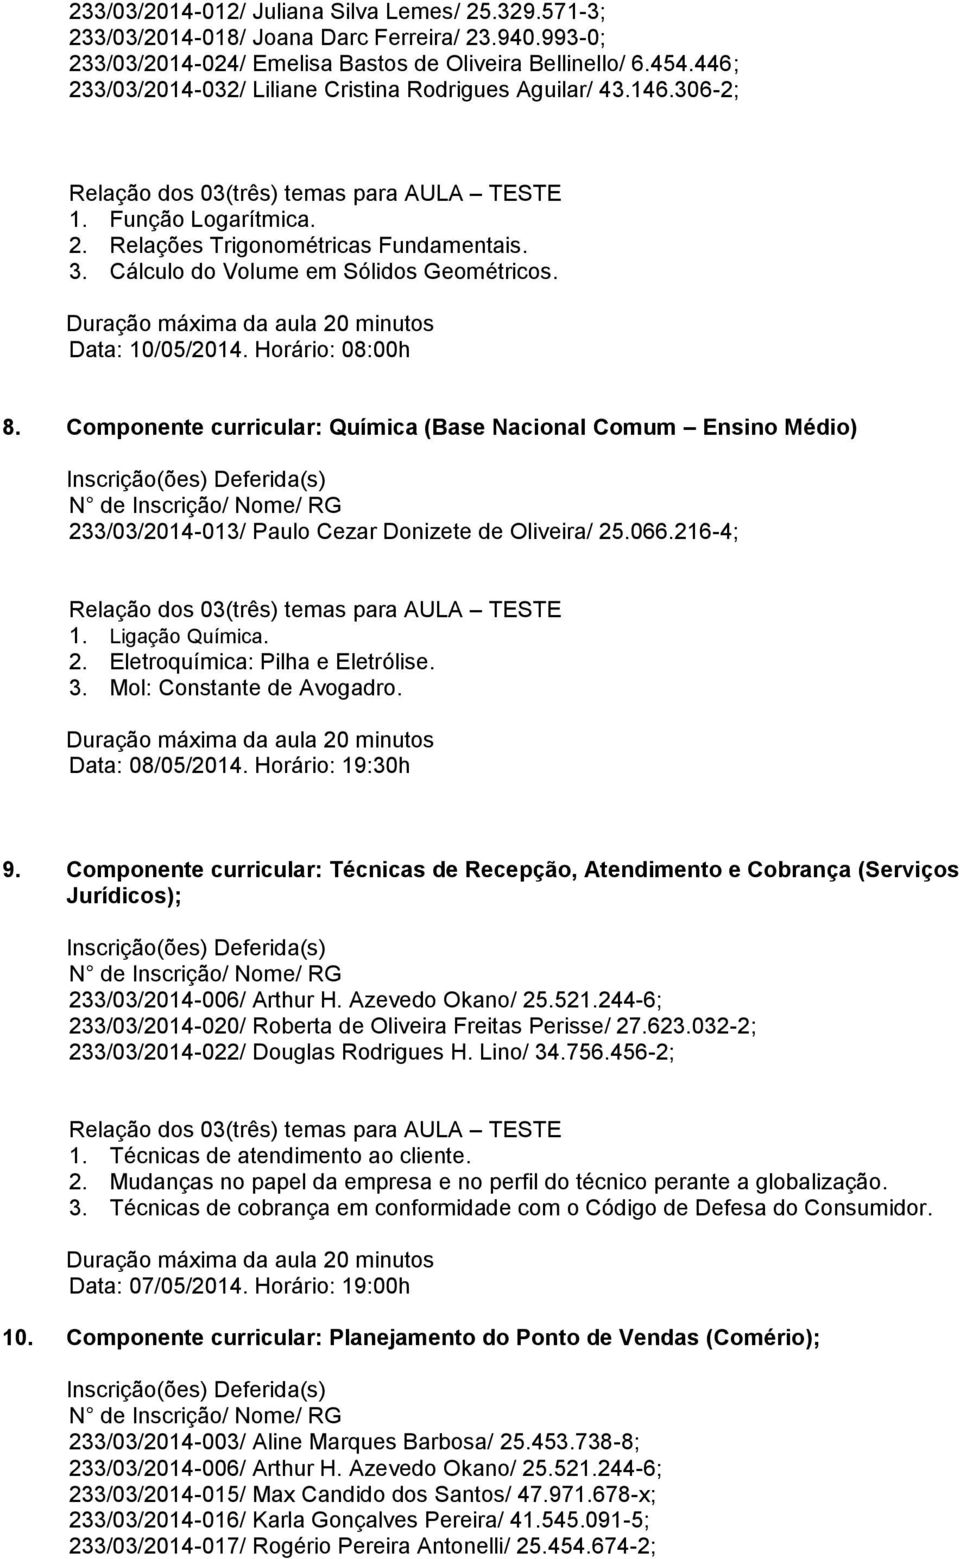 Componente curricular: Química (Base Nacional Comum Ensino Médio) 233/03/2014-013/ Paulo Cezar Donizete de Oliveira/ 25.066.216-4; 1. Ligação Química. 2. Eletroquímica: Pilha e Eletrólise. 3.